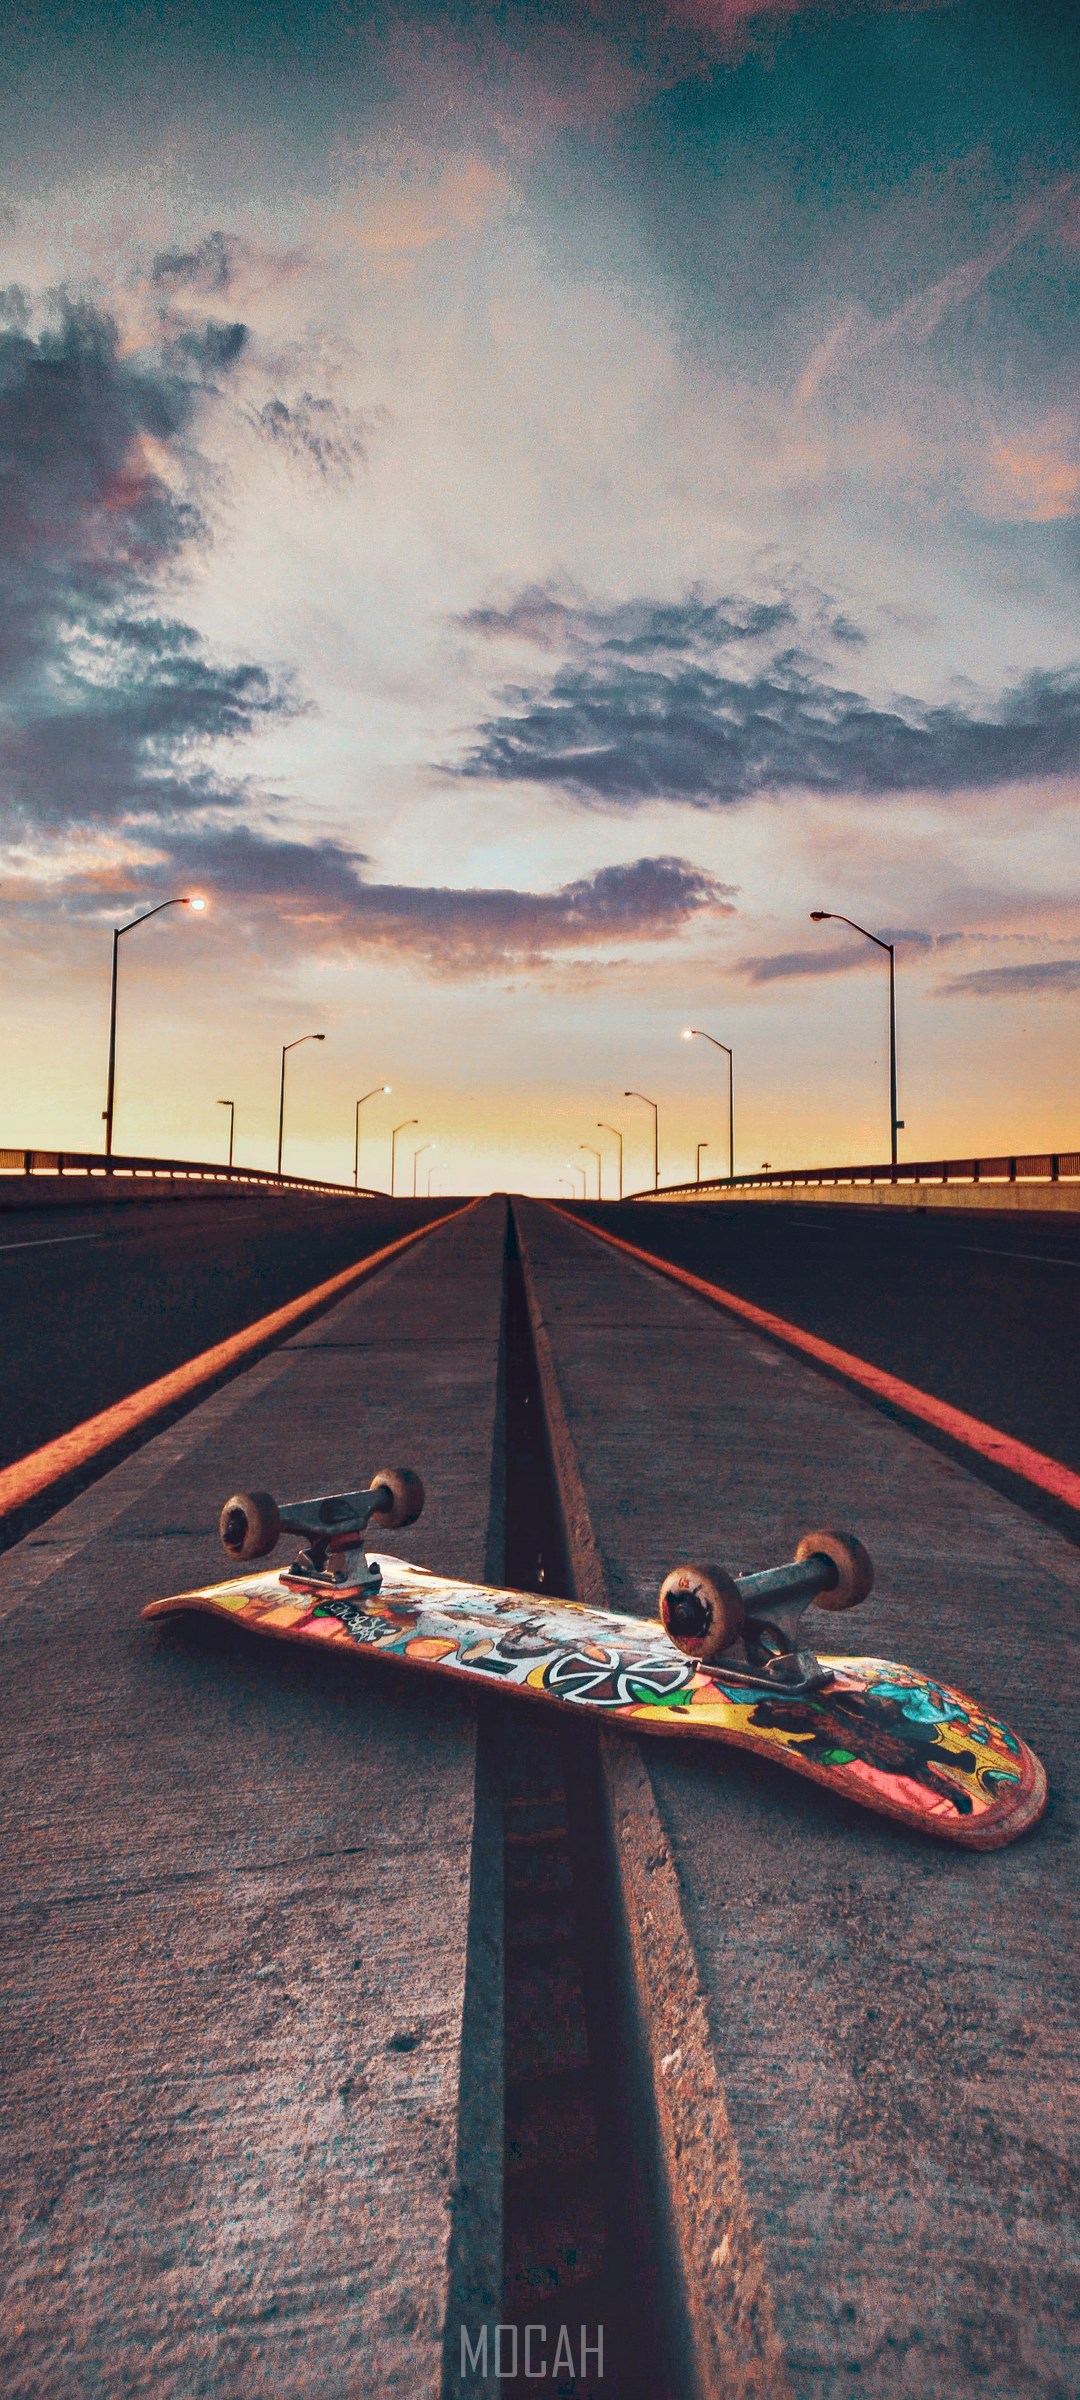 Skateboard, Skateboarding, Asphalt, Race Track, Road, Xiaomi Redmi 10X Pro 5G wallpaper download, 1080x2400 Gallery HD Wallpaper